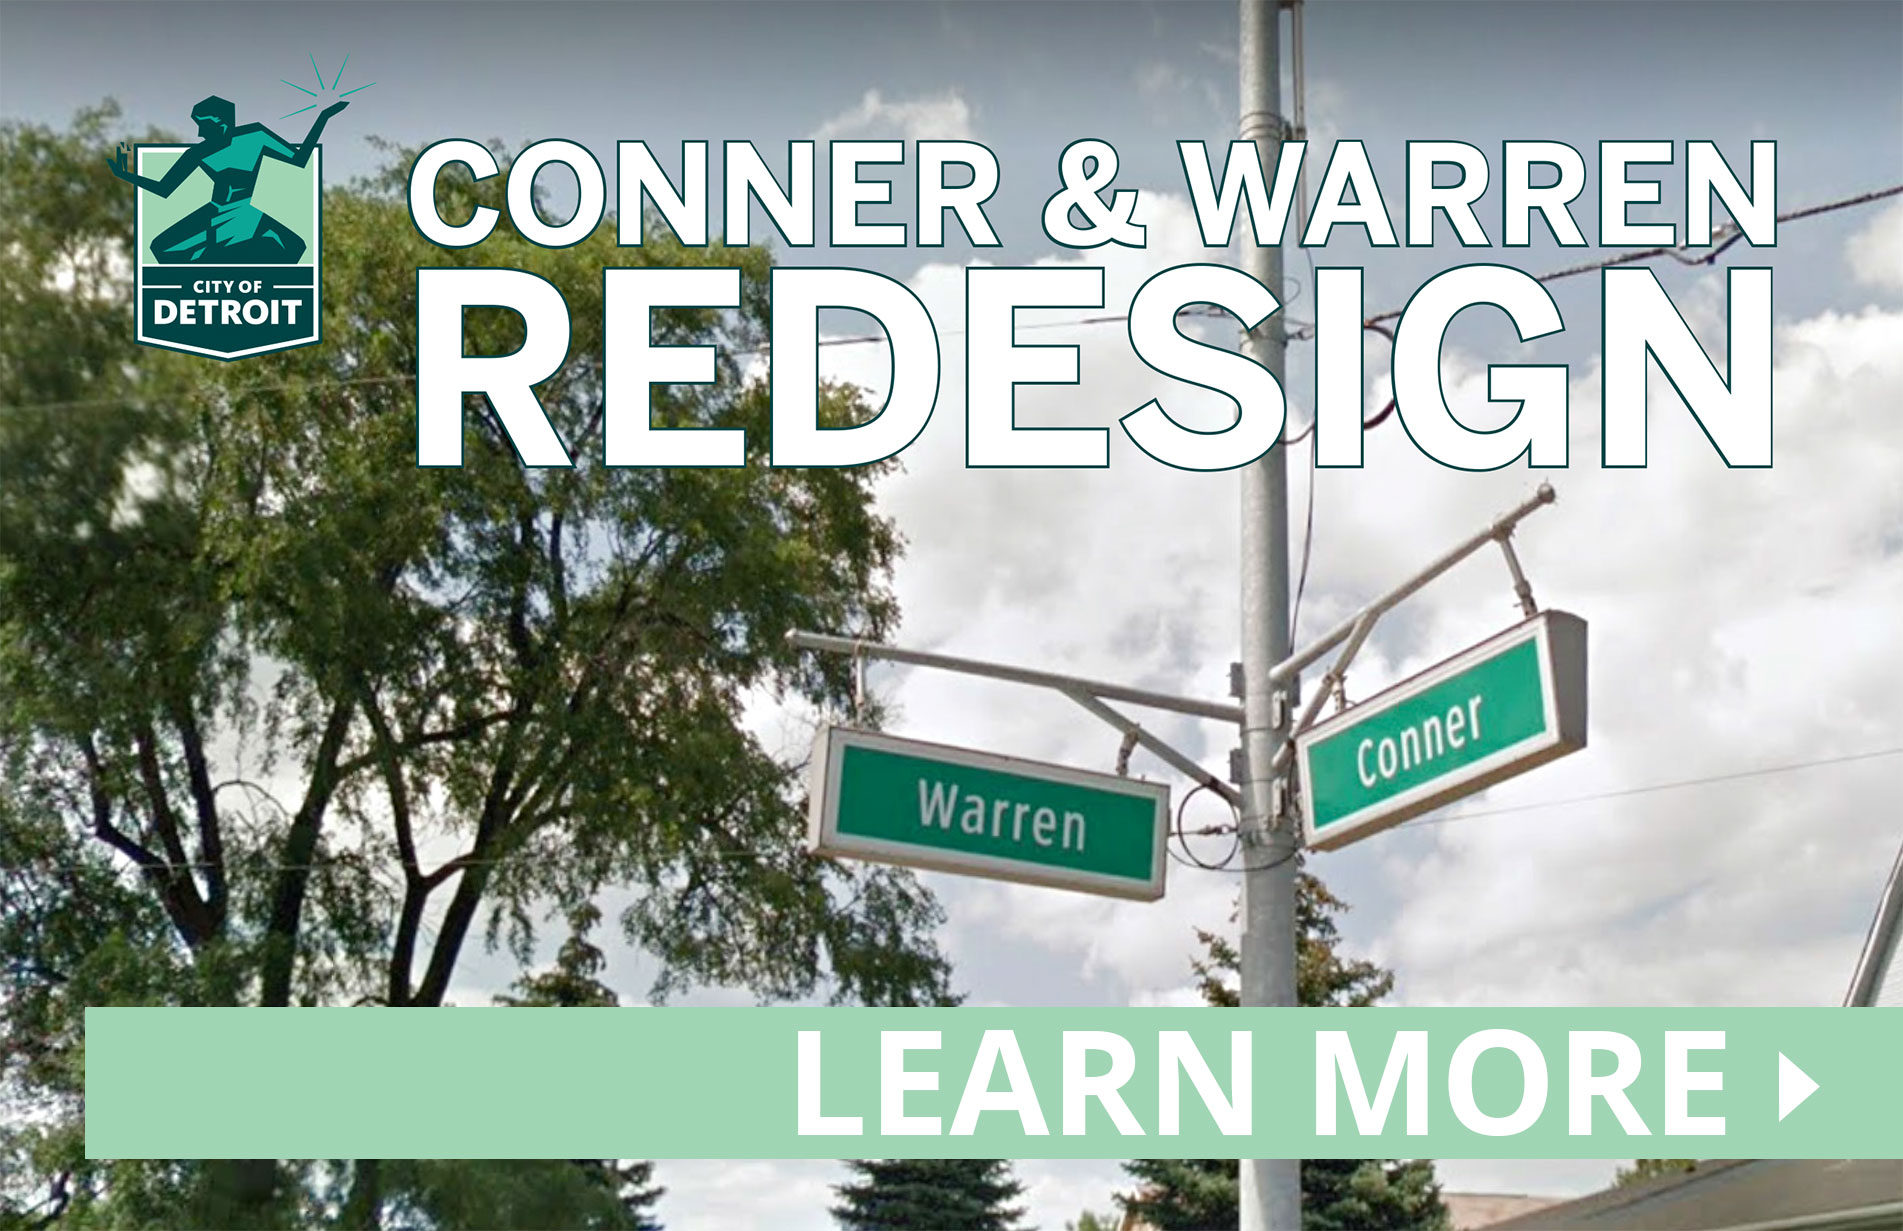 اعرف المزيد عن Conner Warren Redesign